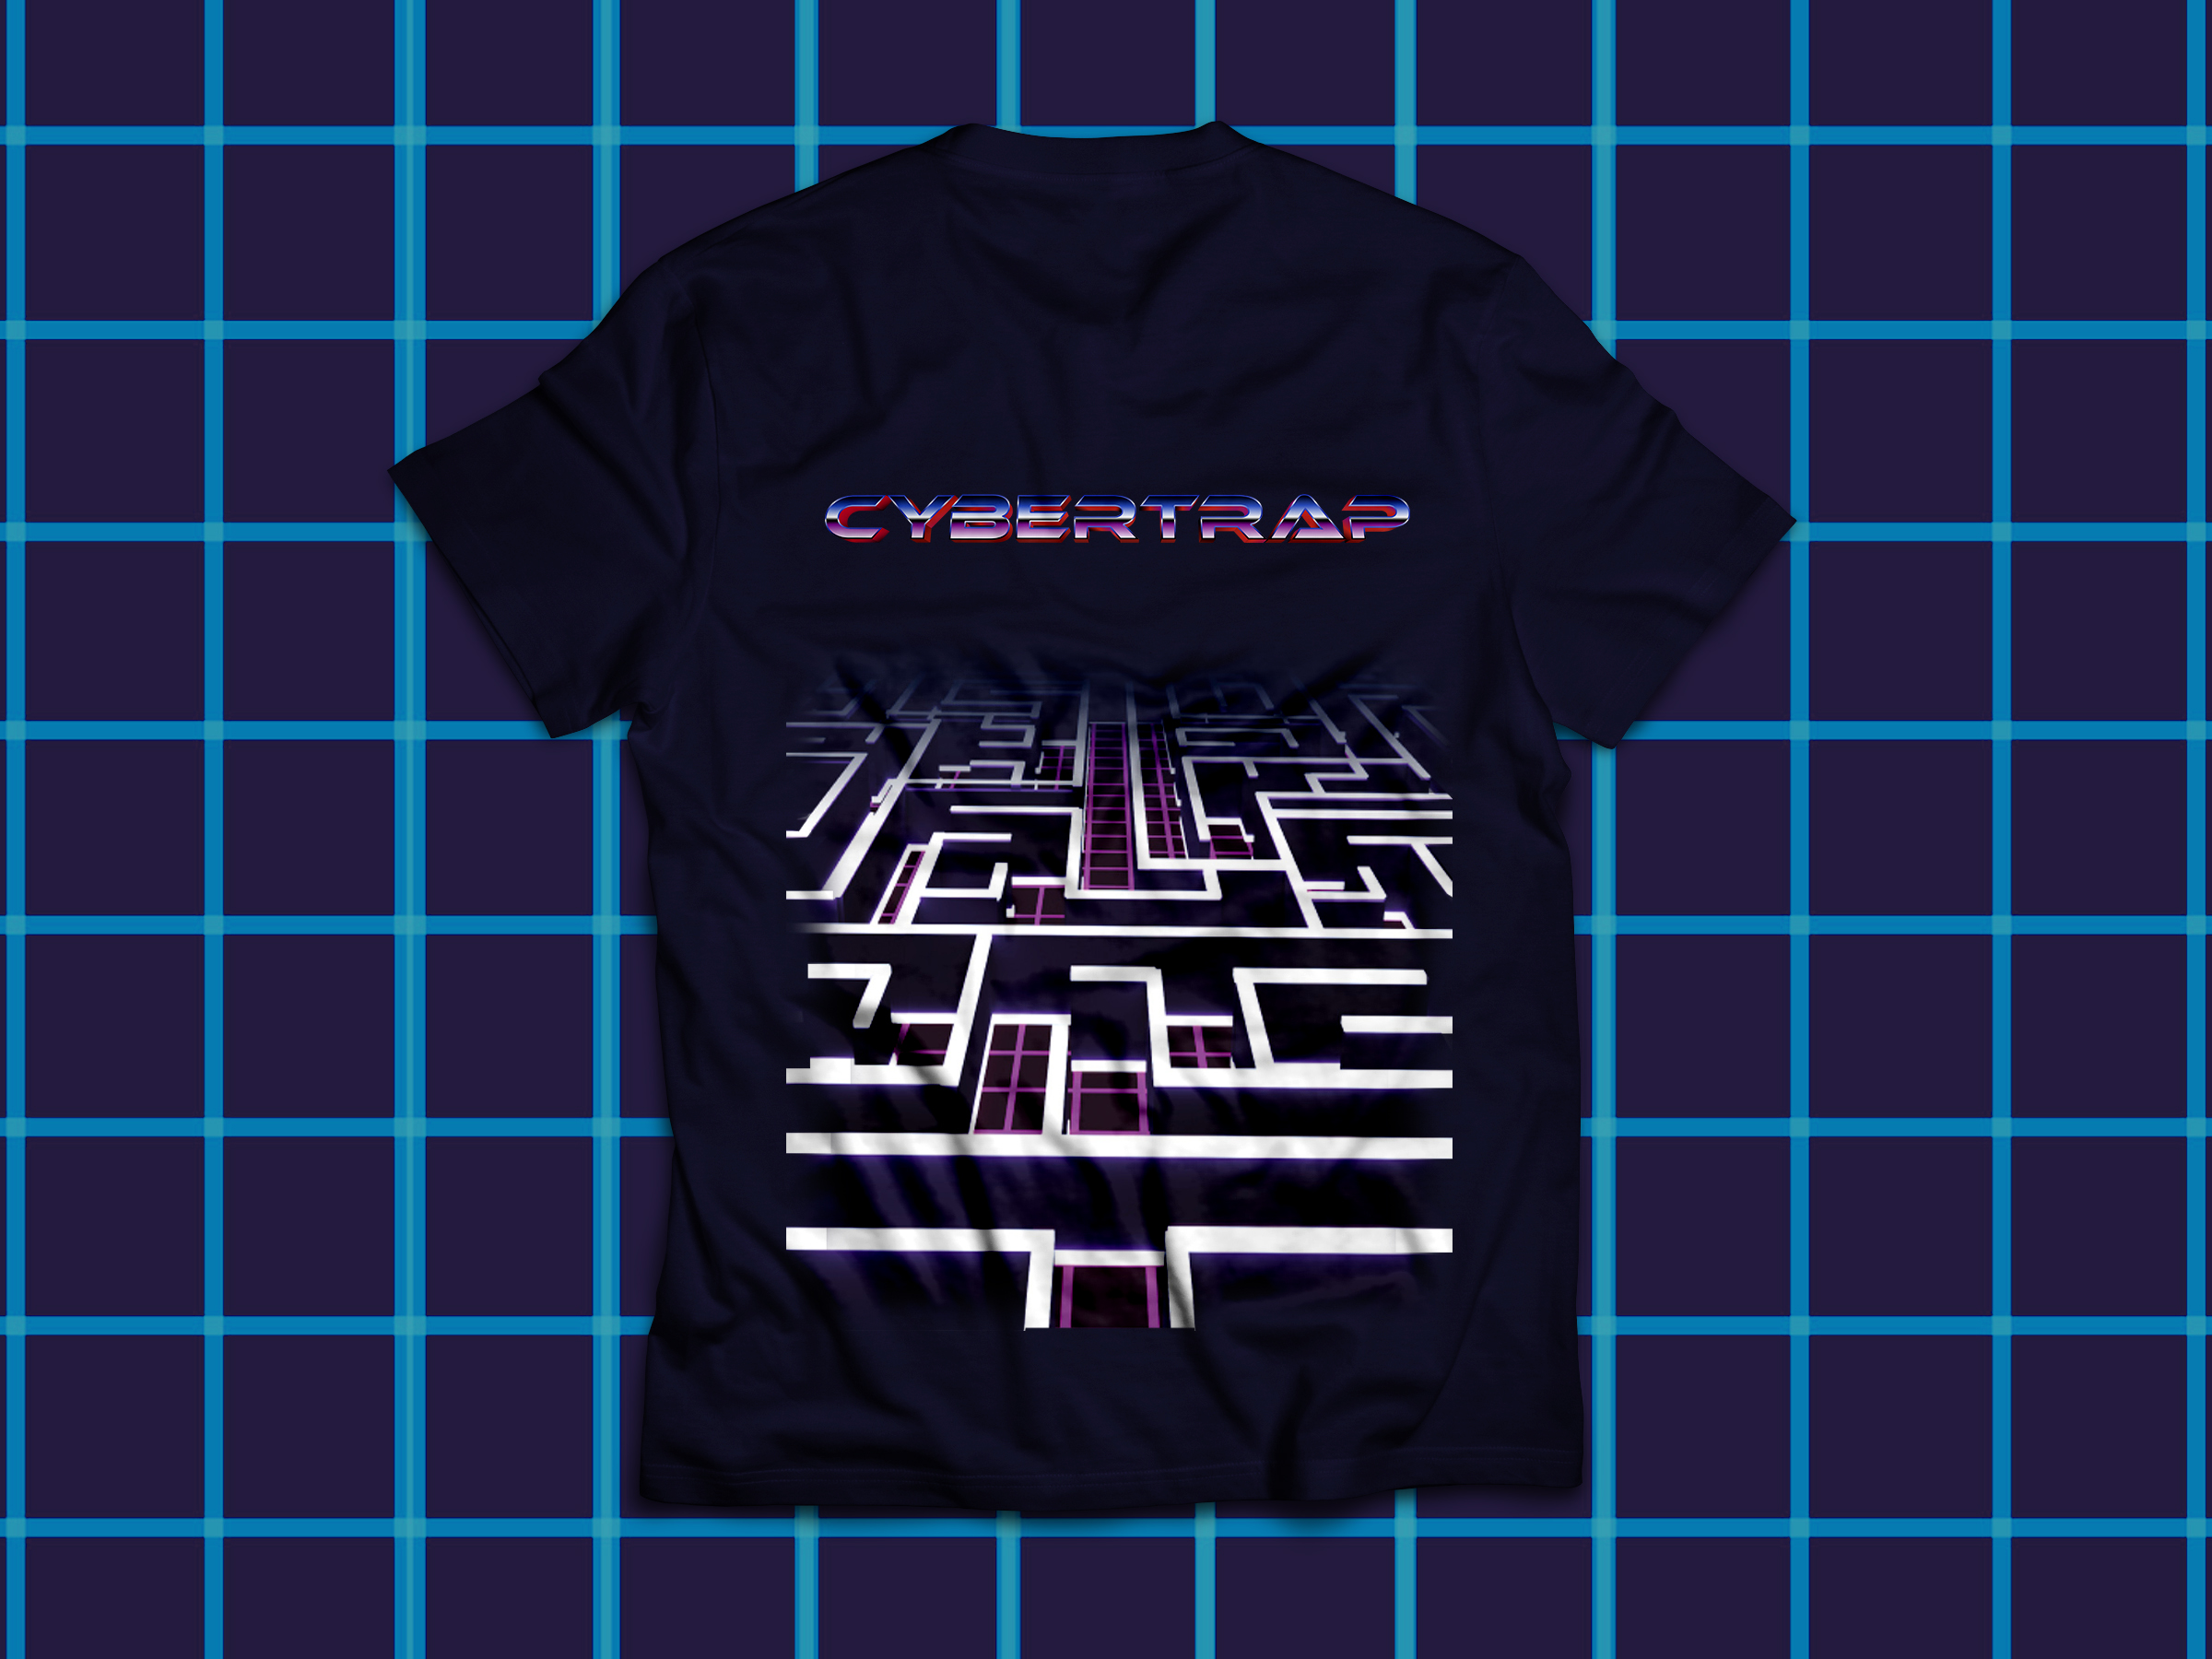 T-shirt promotionnel porté par l'équipe Cybertrap